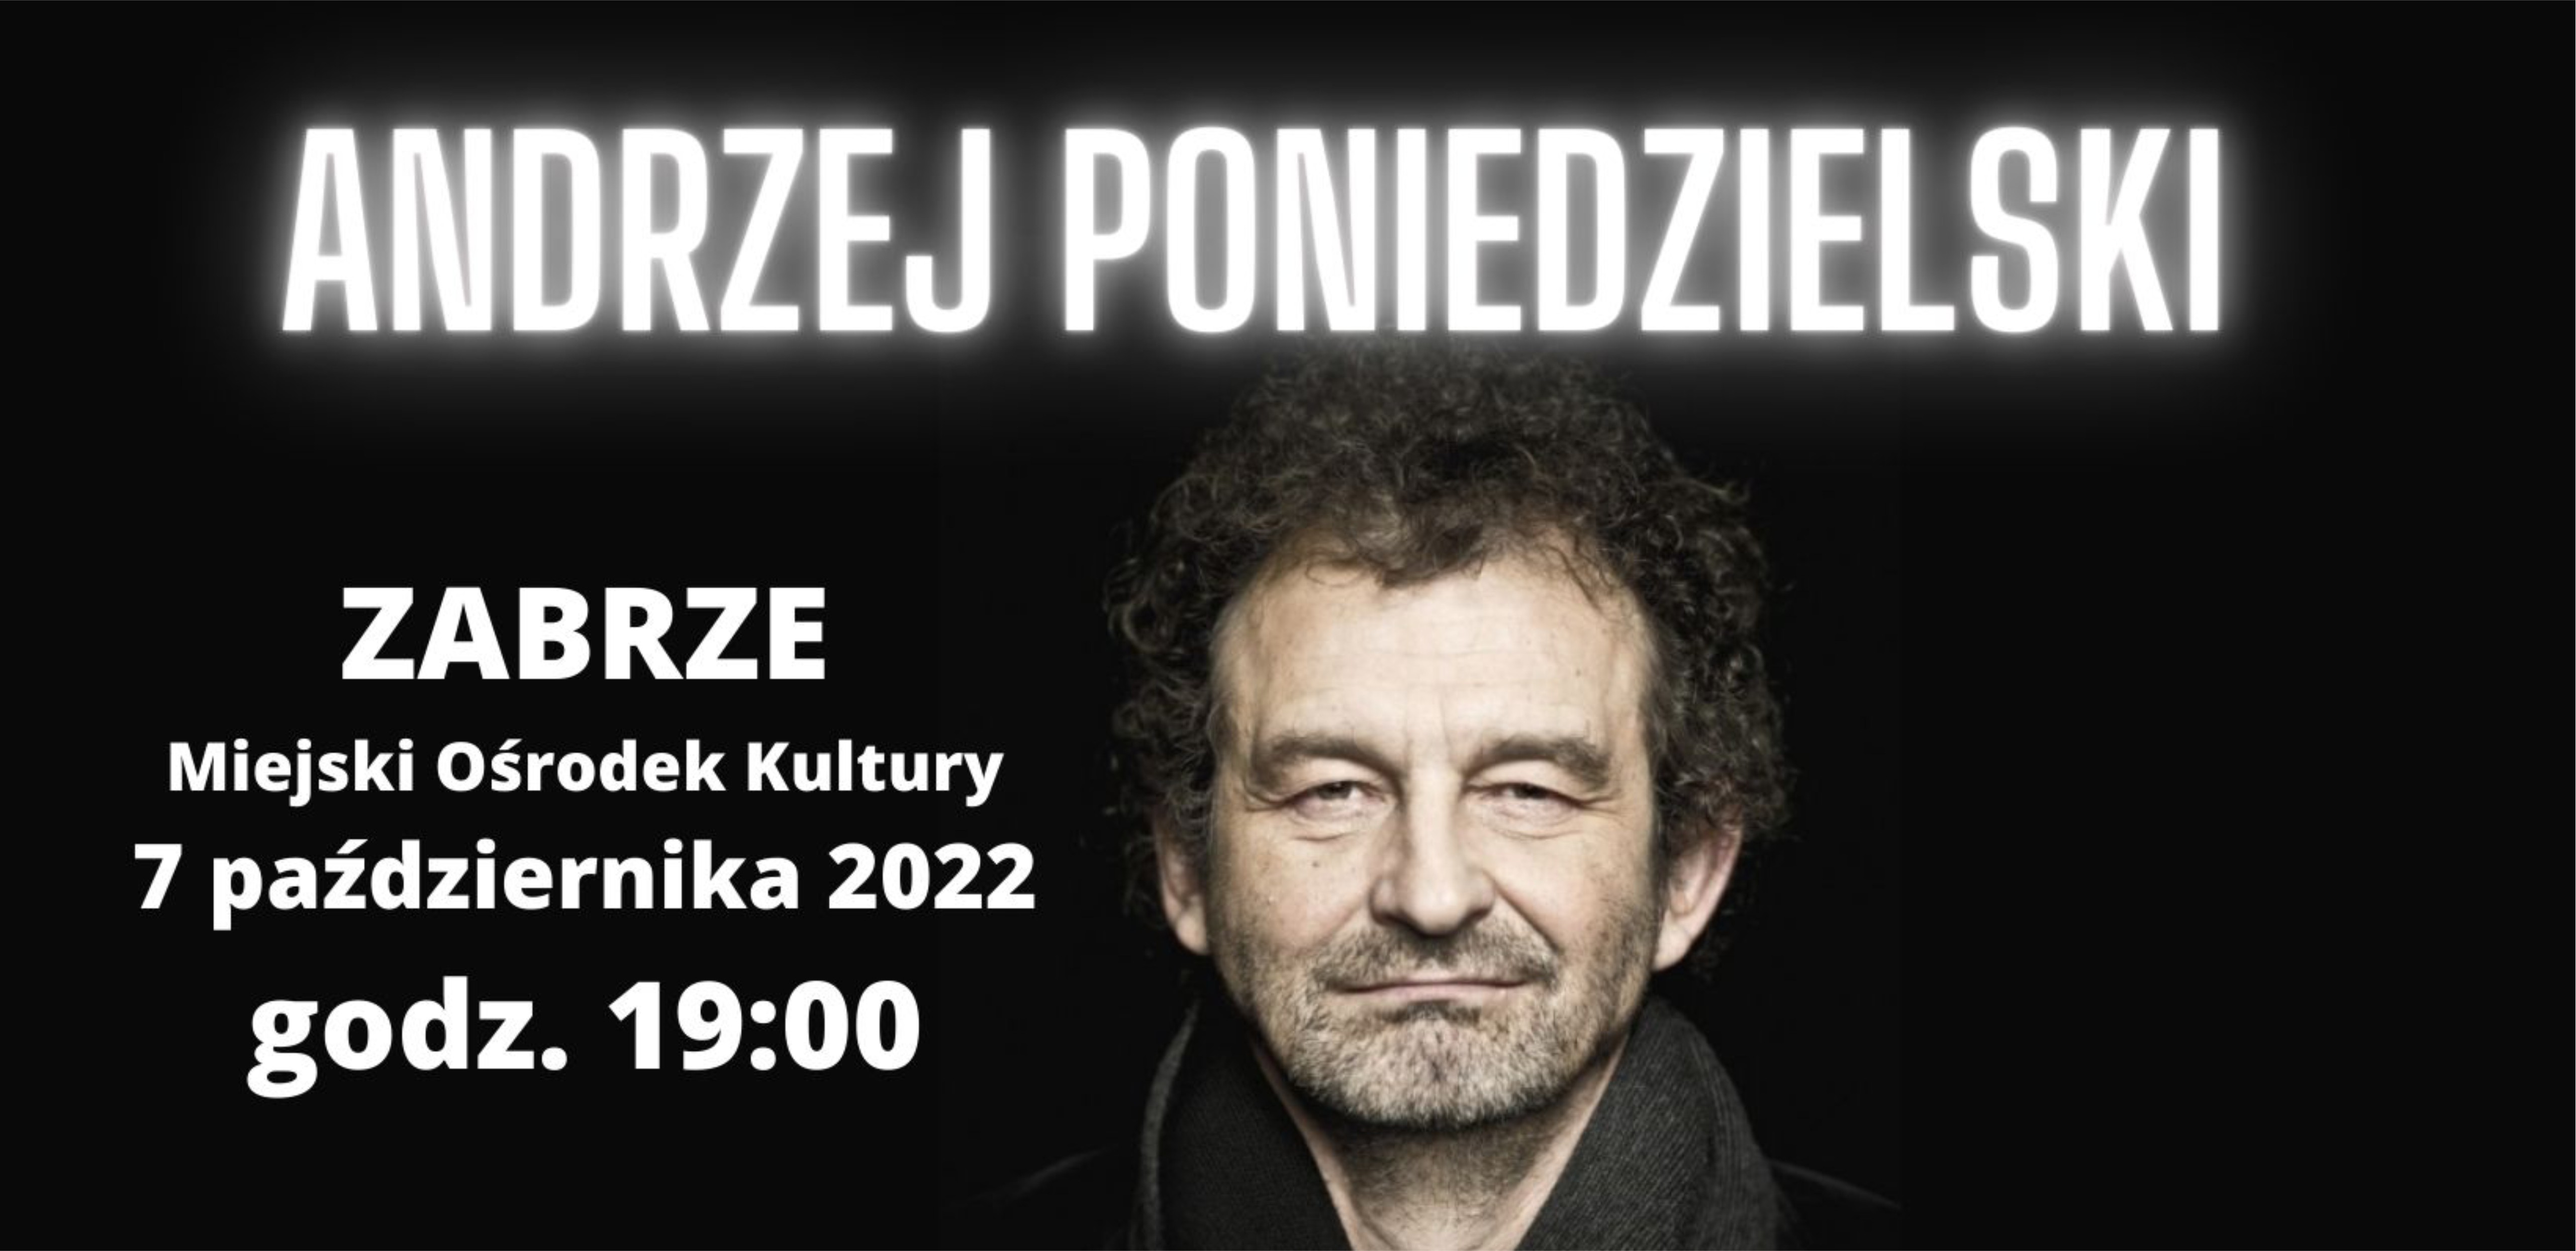 baner promujący wieczór kabaretowy z Andrzejem Poniedzielskim